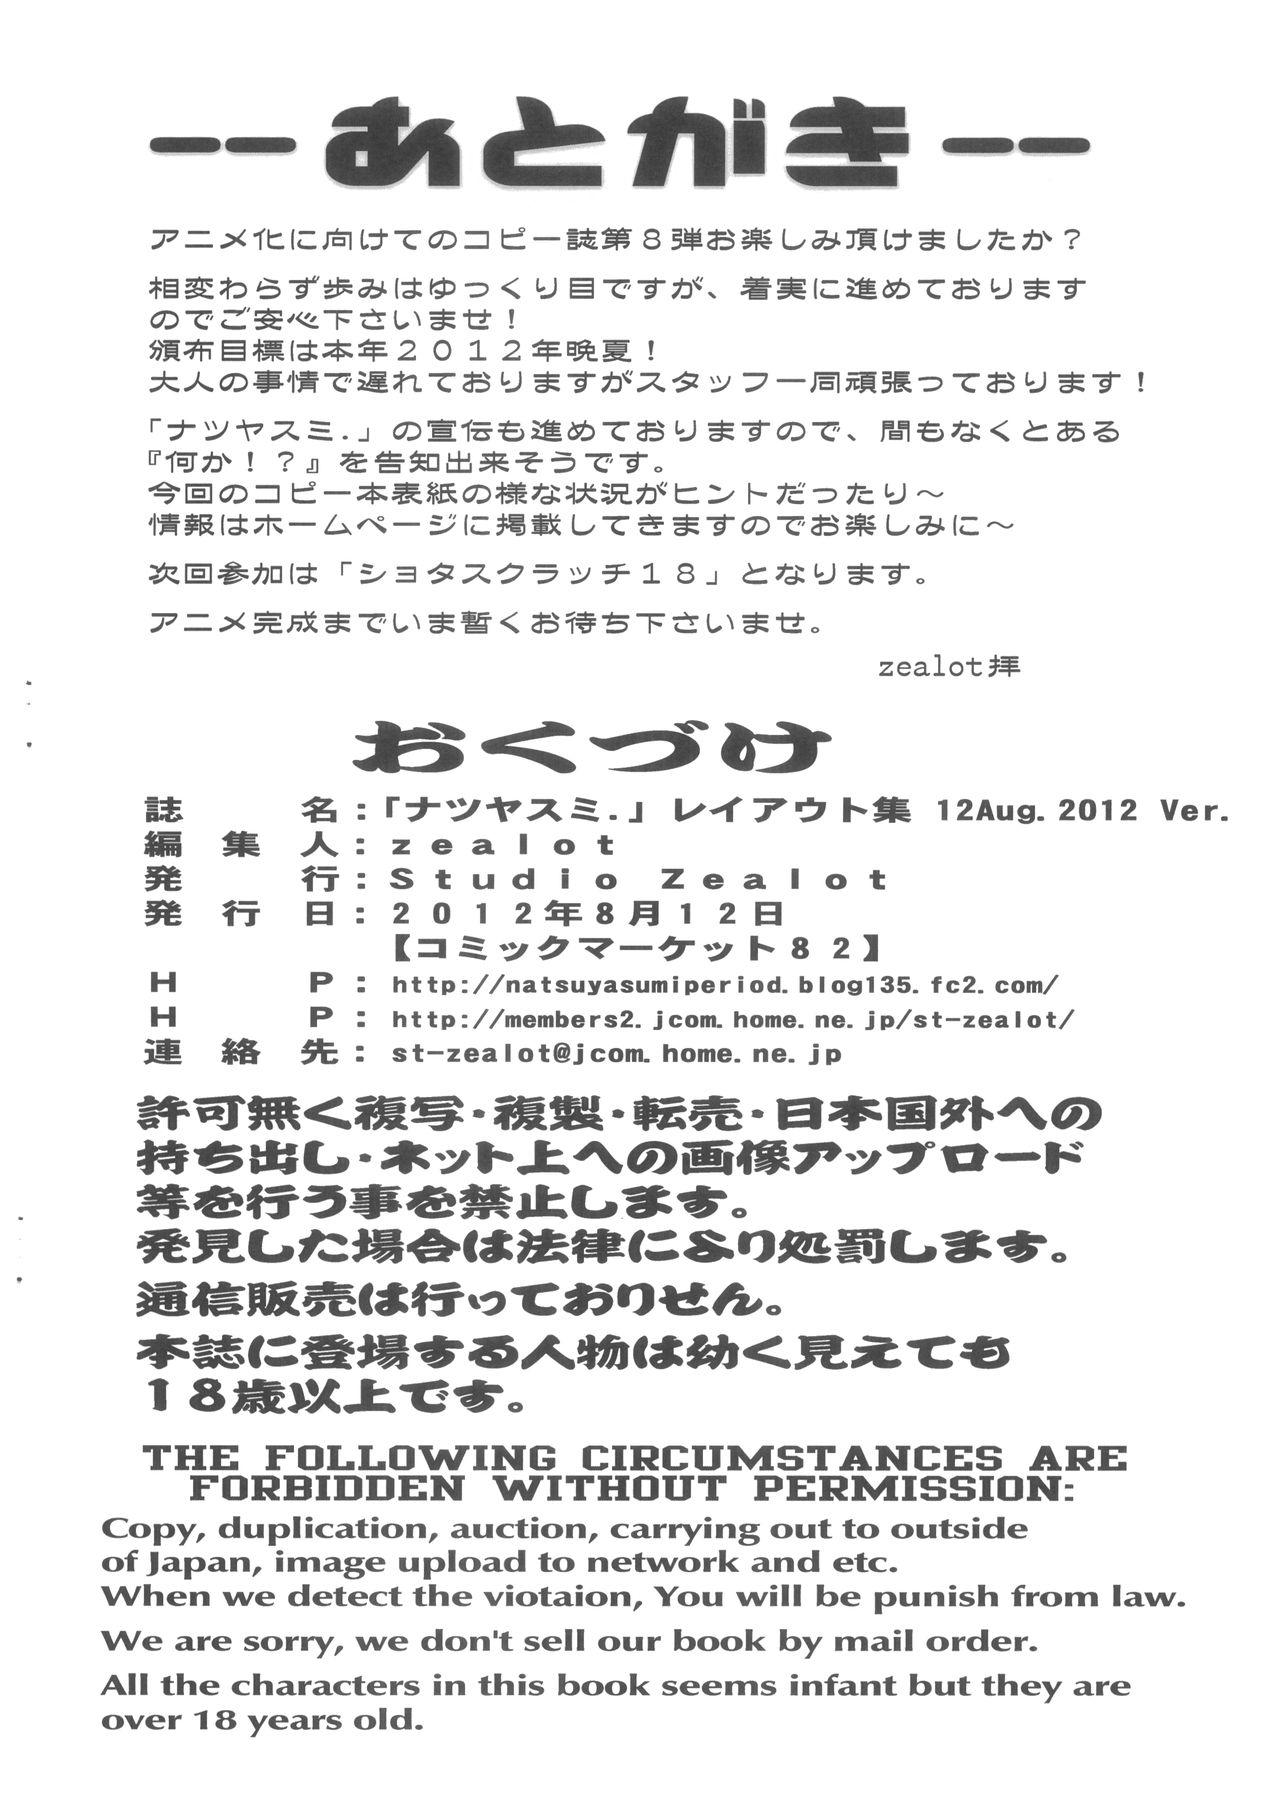 Natsuyasumi Period Layout Shuu 12 Aug. 2012 Ver. 8